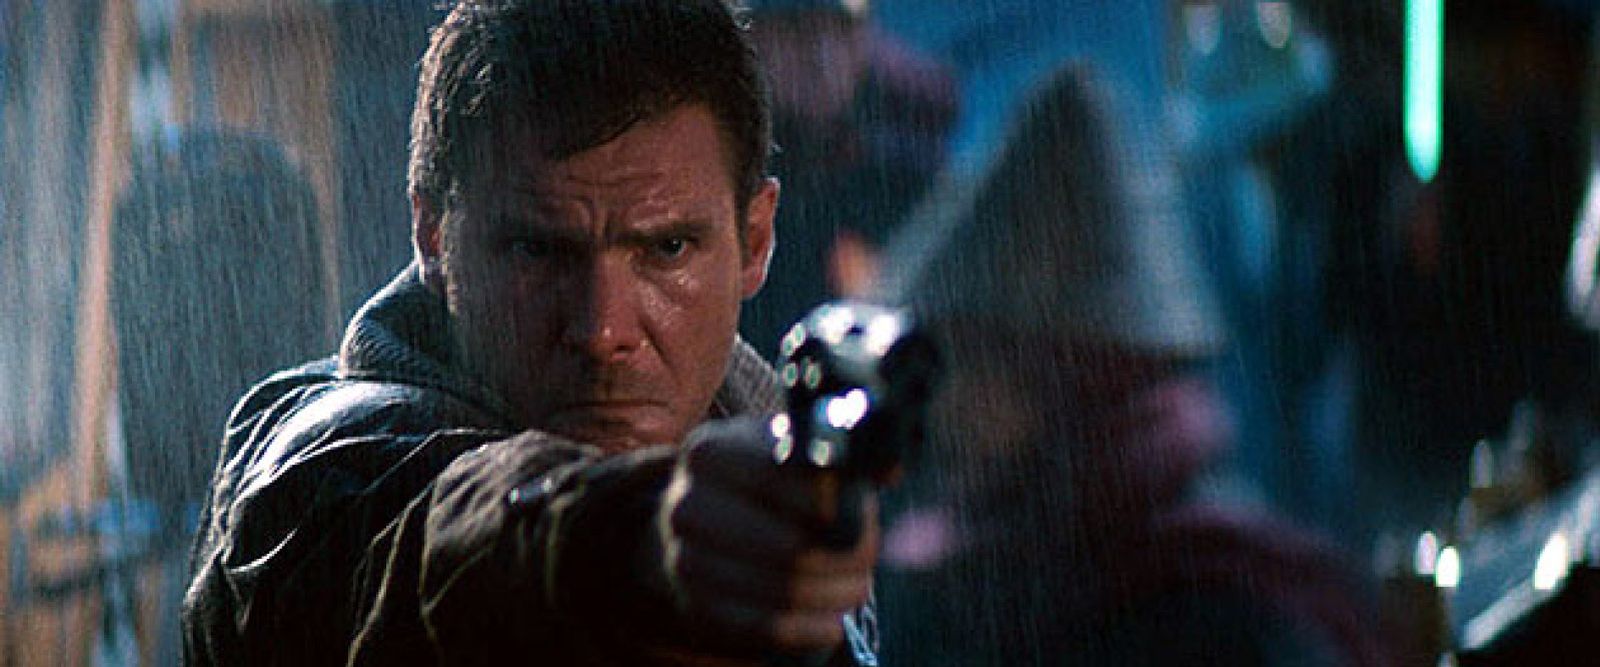 Foto: El arma de Blade Runner, estrella en una subasta de cine